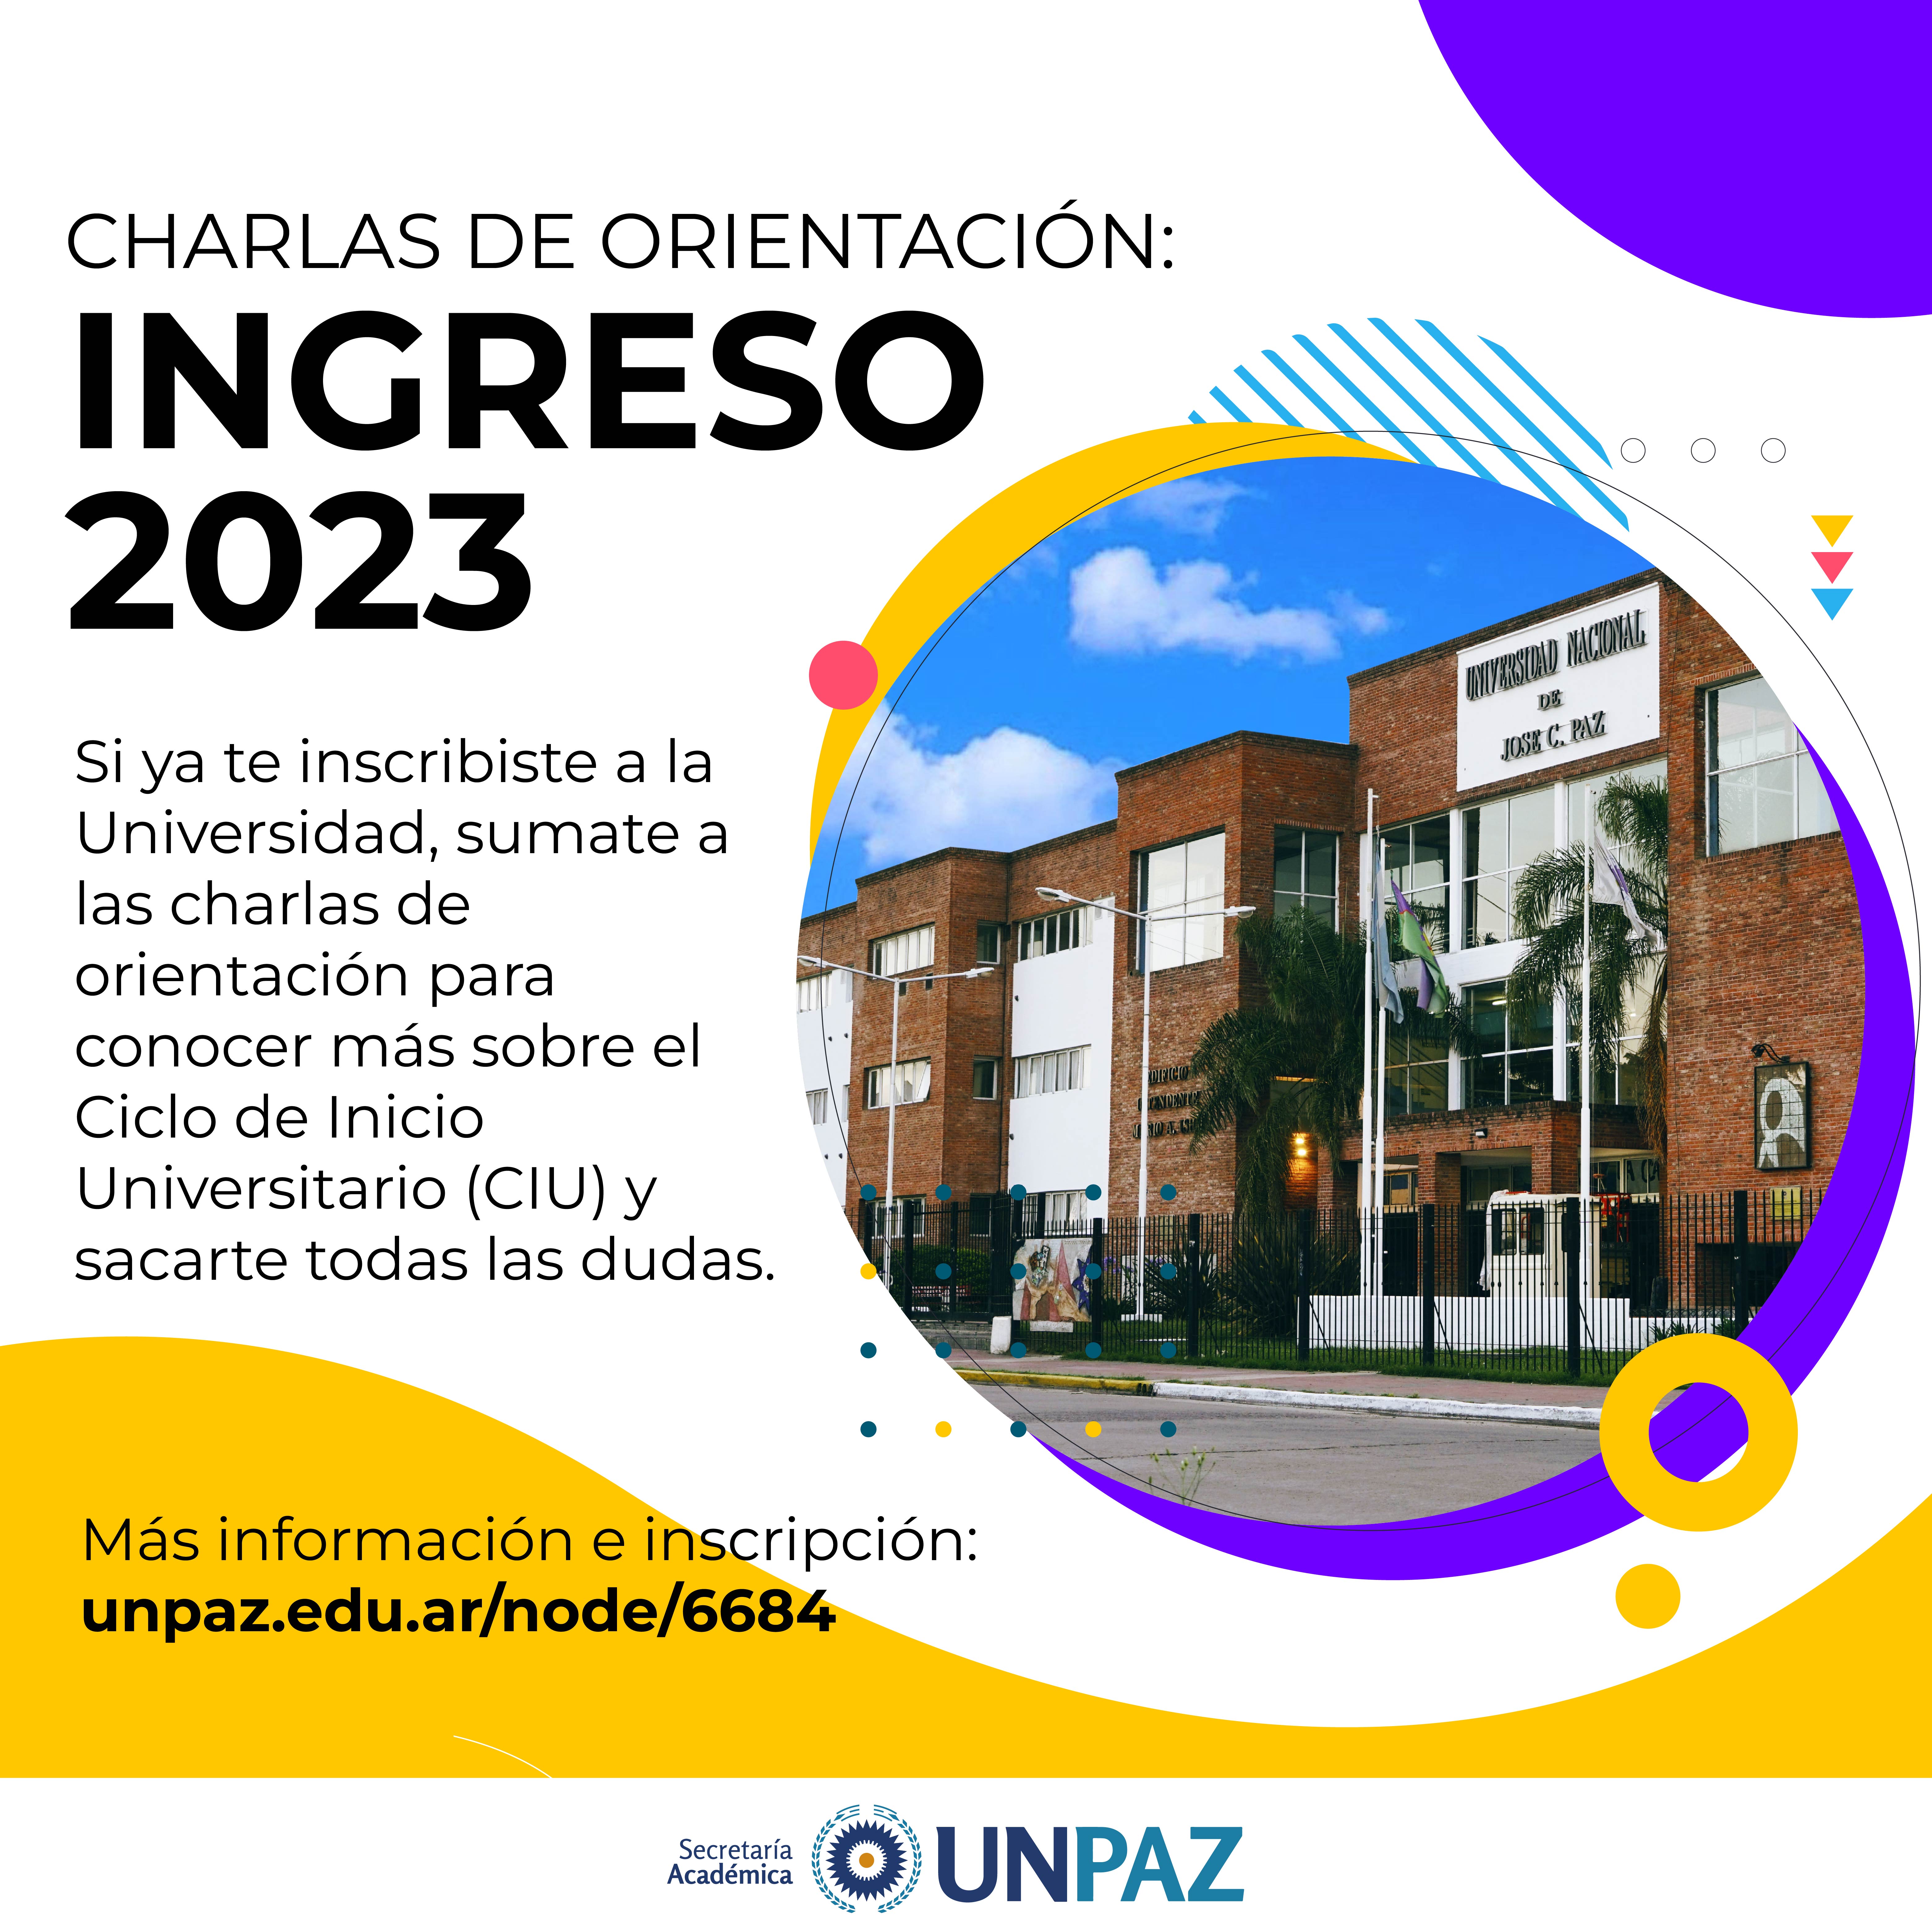 CHARLAS DE ORIENTACIÓN INGERSO 2023